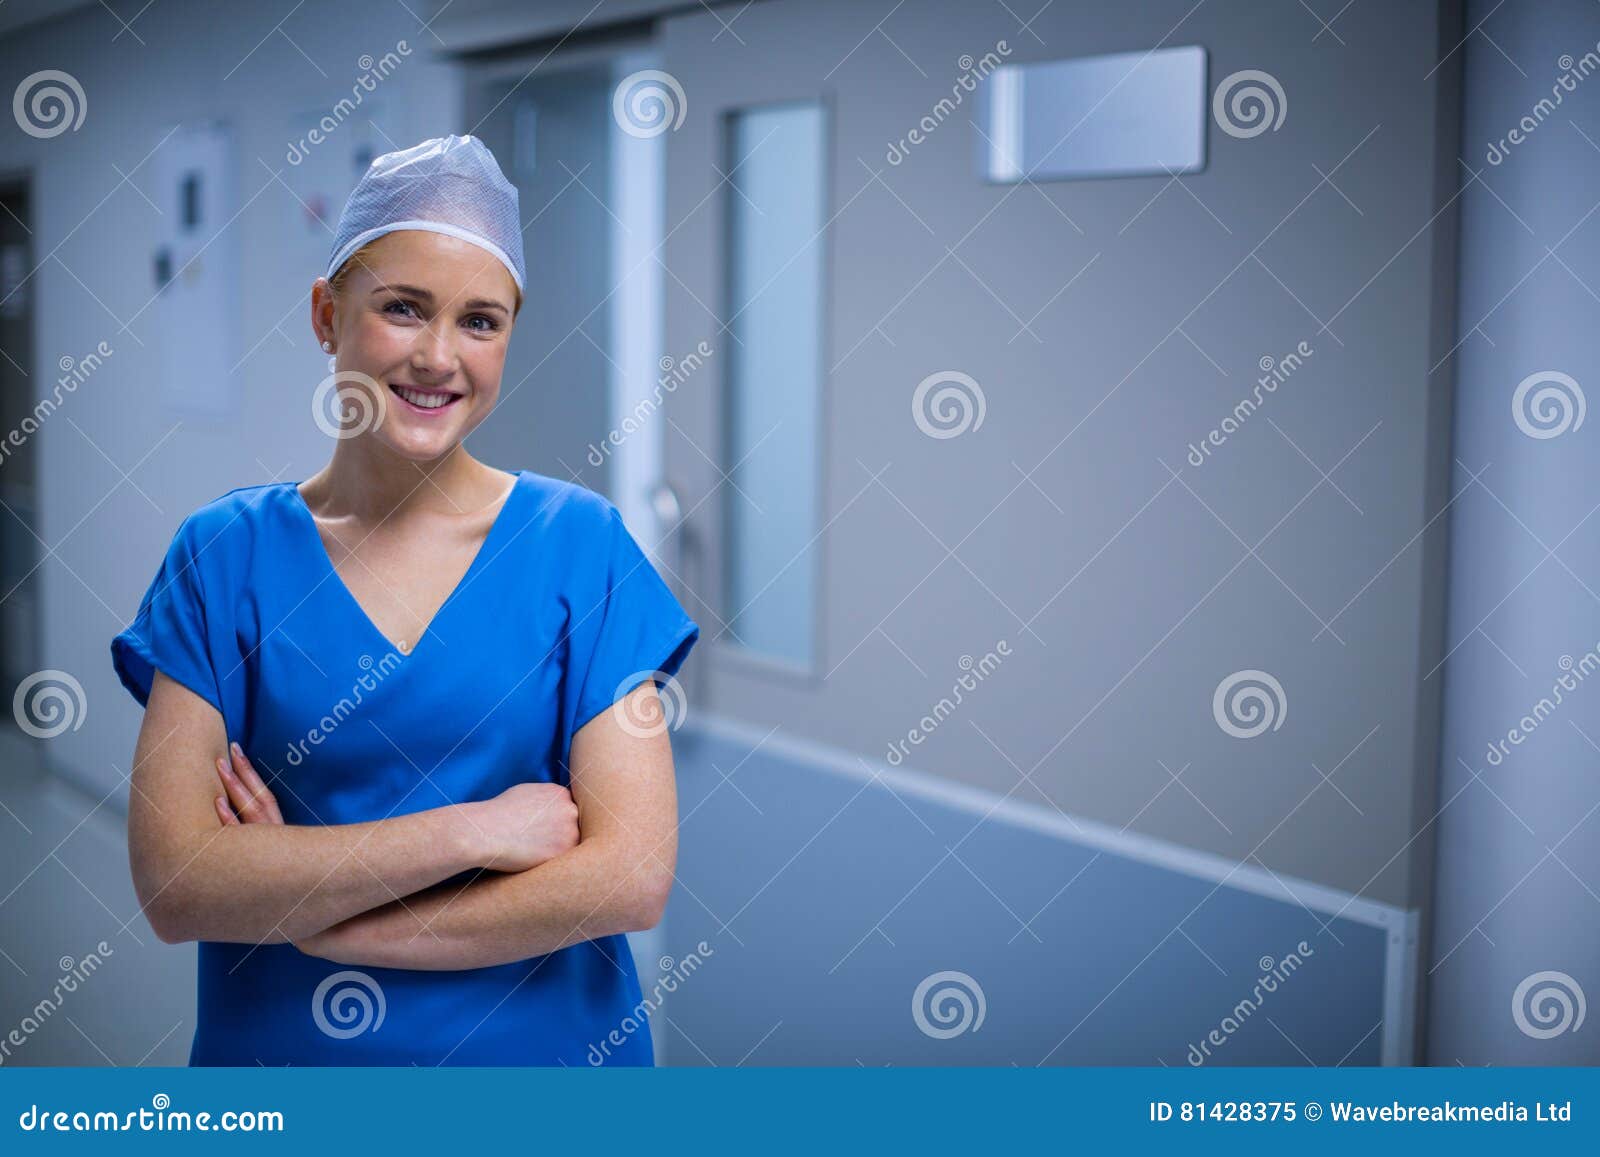 Познакомиться в больнице. Фотопортрет медсестры. Медсестра в процедурном кабинете. Две медсестры. Красивая медсестра в больнице.